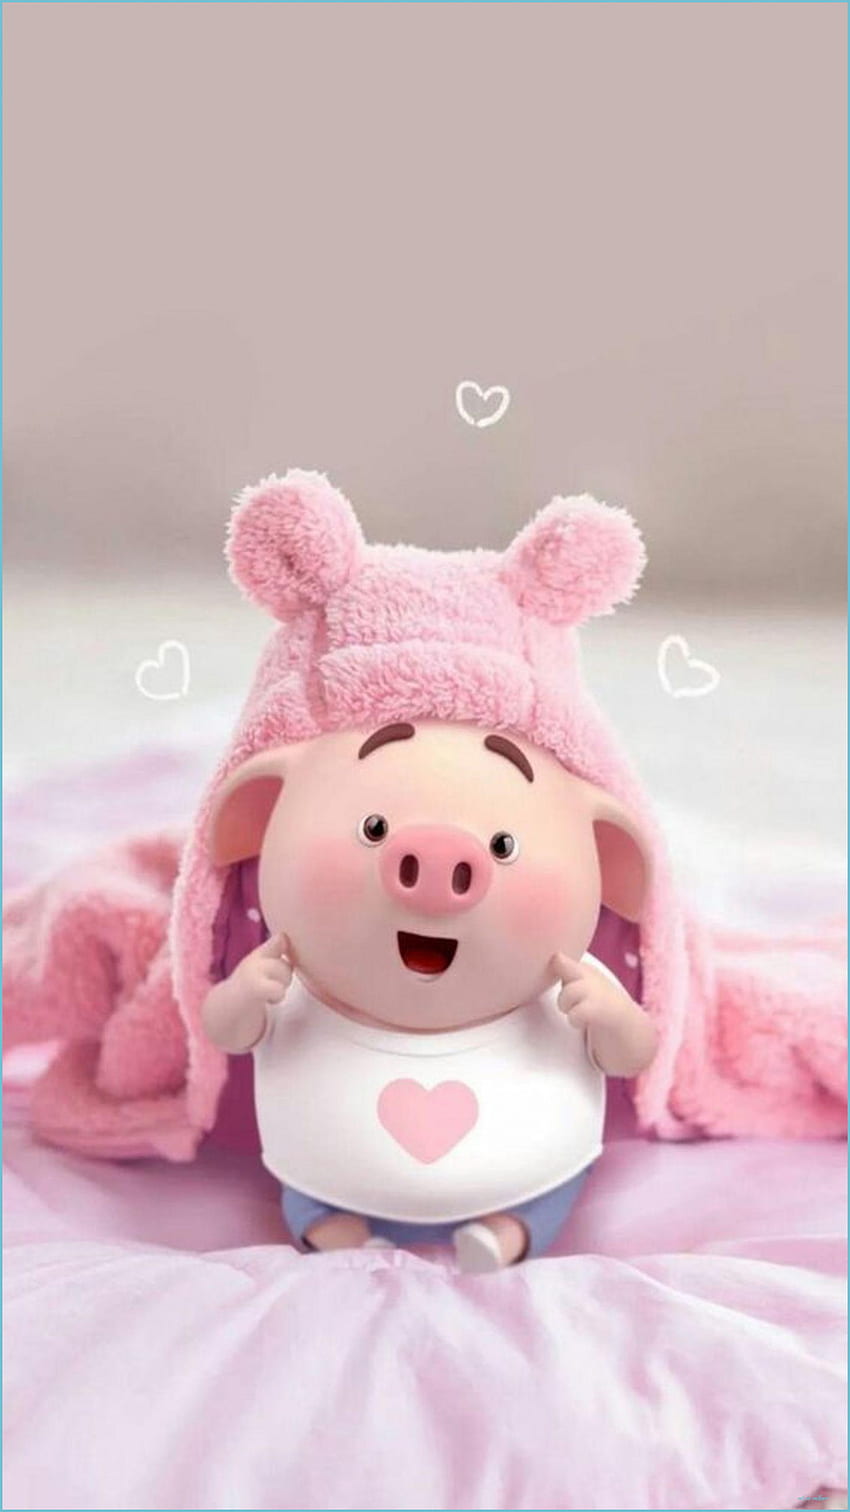 Cute Piggy For Android: Heo con đáng yêu trong ứng dụng của bạn sẽ làm cho việc sử dụng điện thoại trở nên dễ chịu hơn. Hãy cập nhật ngay hình ảnh cute piggy cho Android của bạn và tạo nên một giao diện độc đáo.